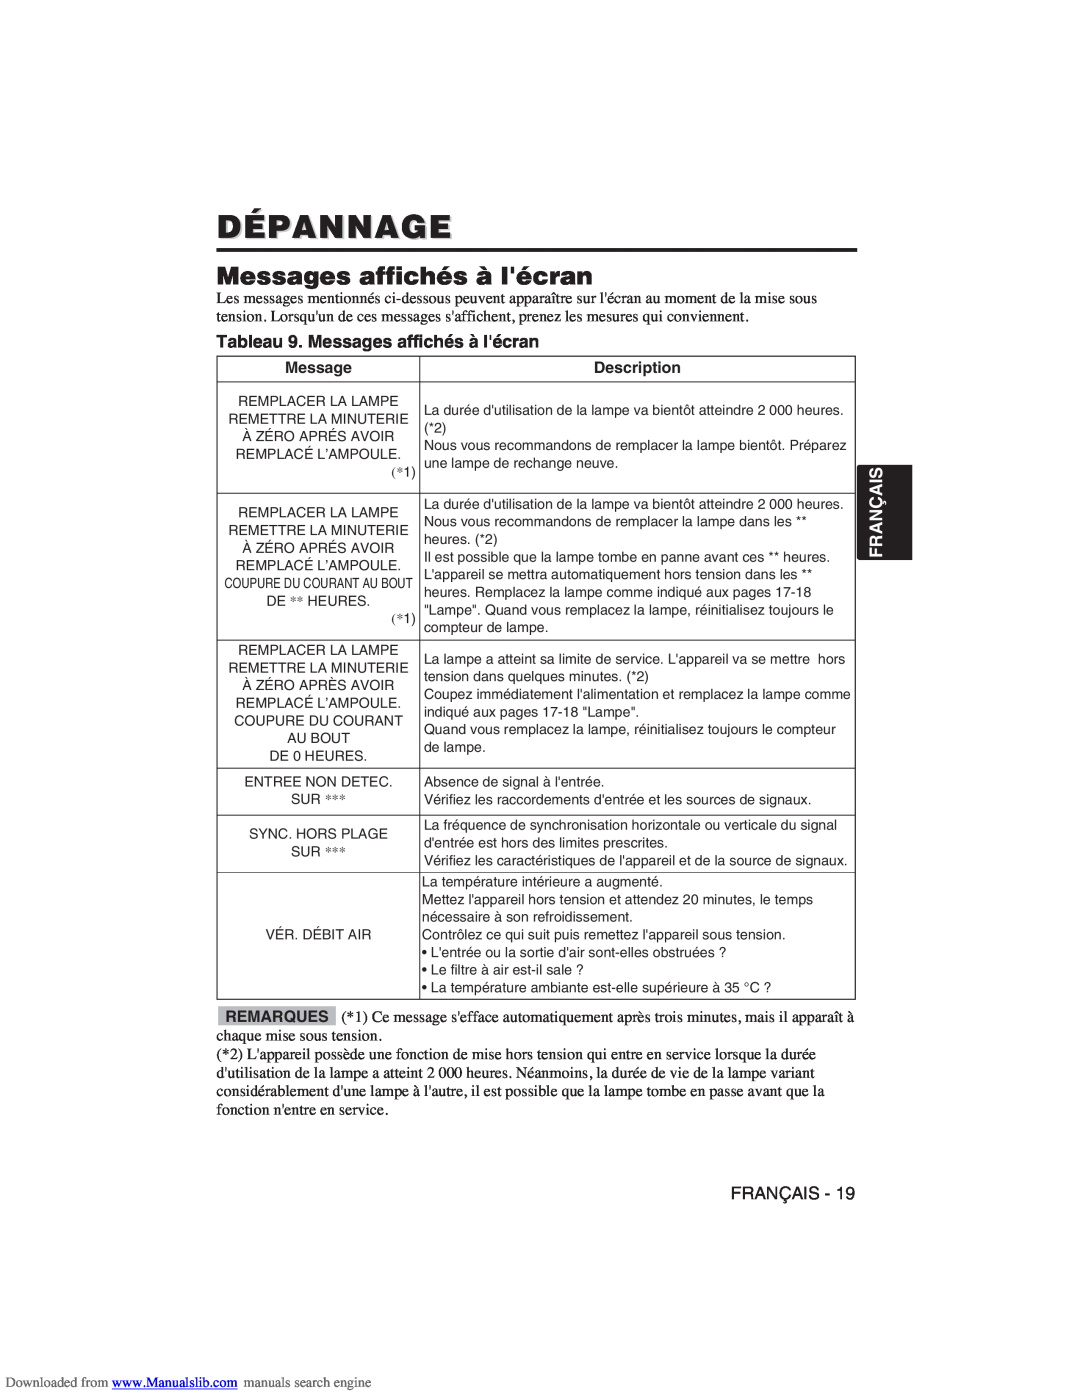 Hitachi CP-X275W user manual Dépannage, Tableau 9. Messages affichés à lécran, Français 